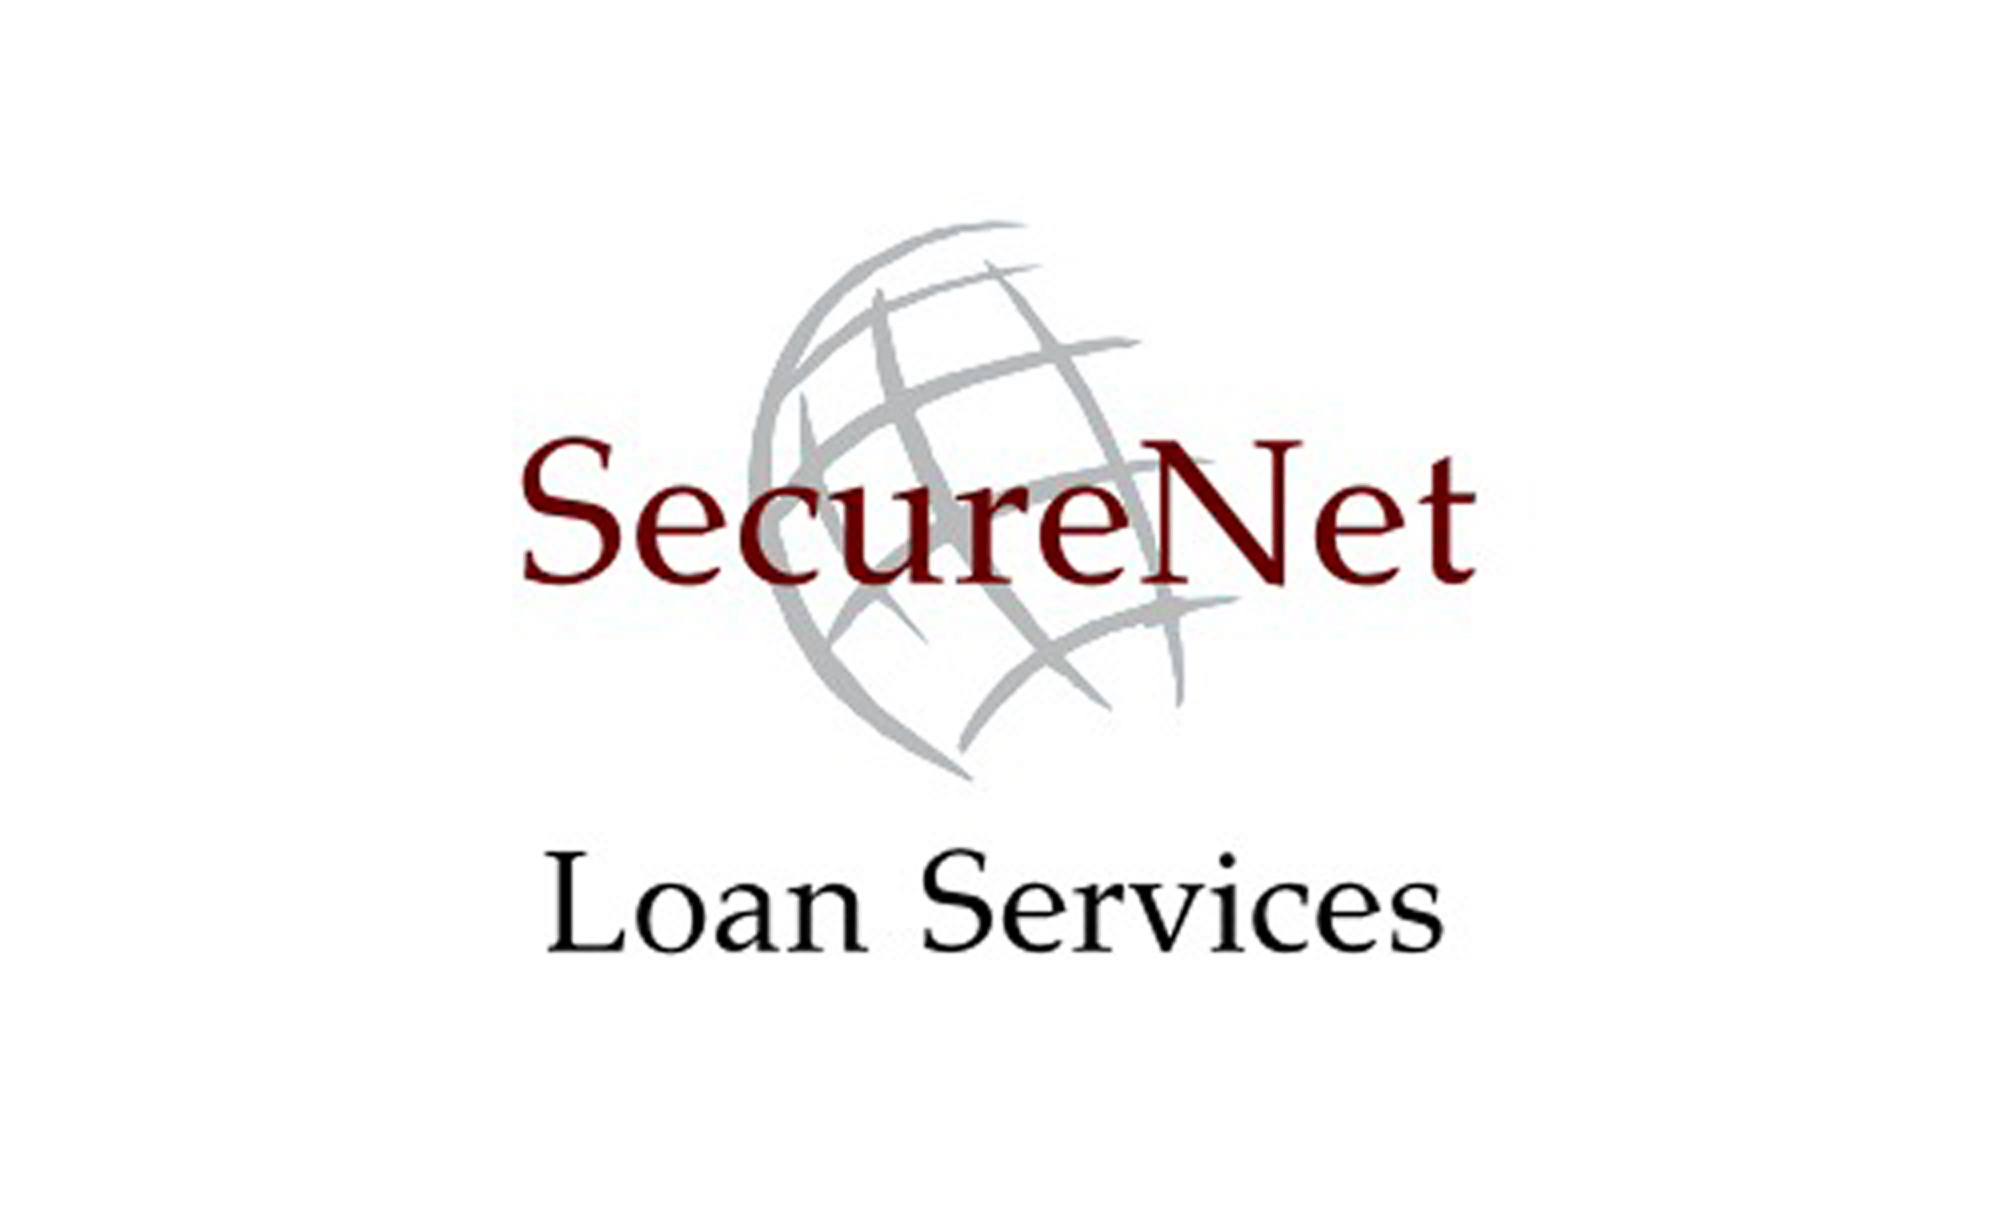 Securenet Loan Services